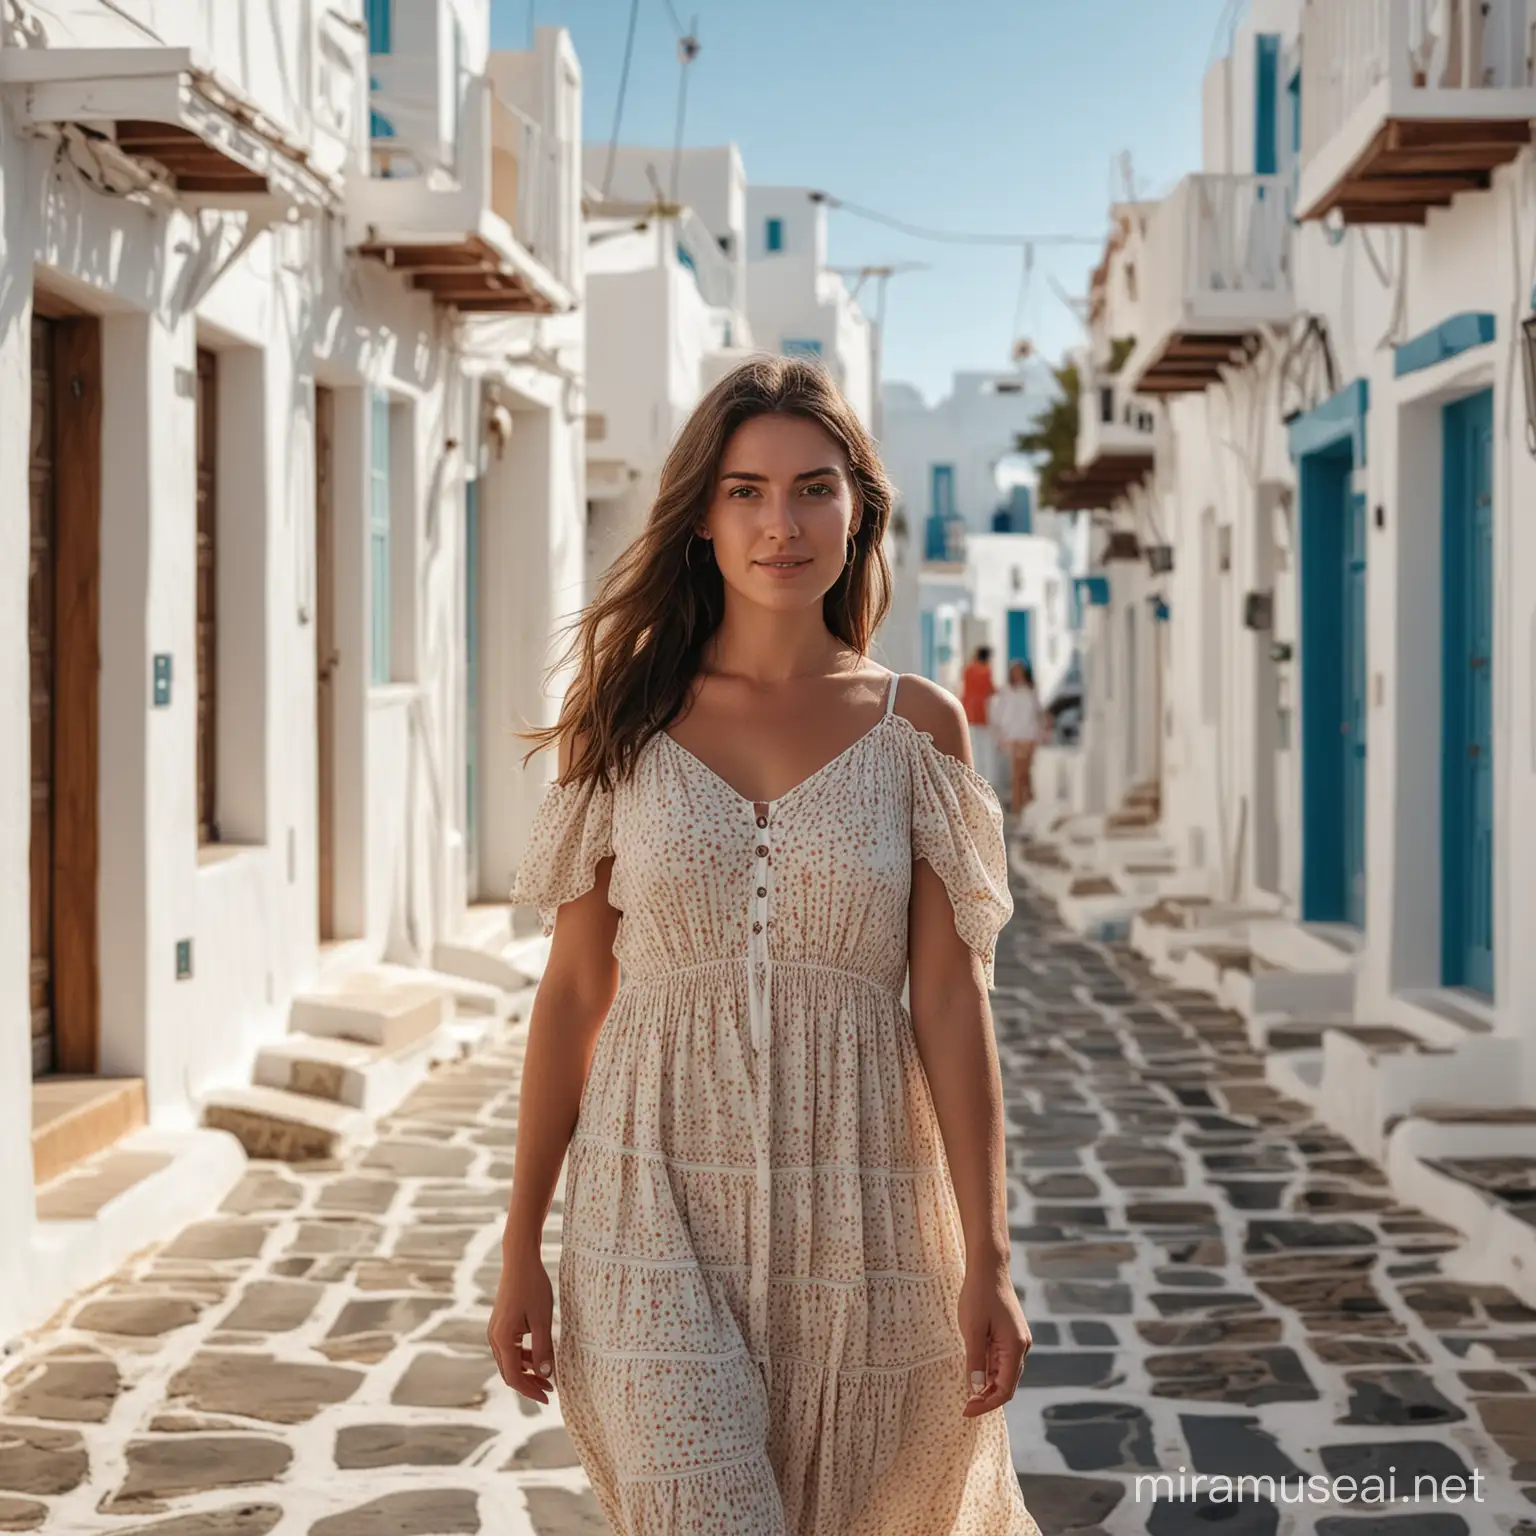 Stylish Woman in Summer Dress Strolling through Mykonos